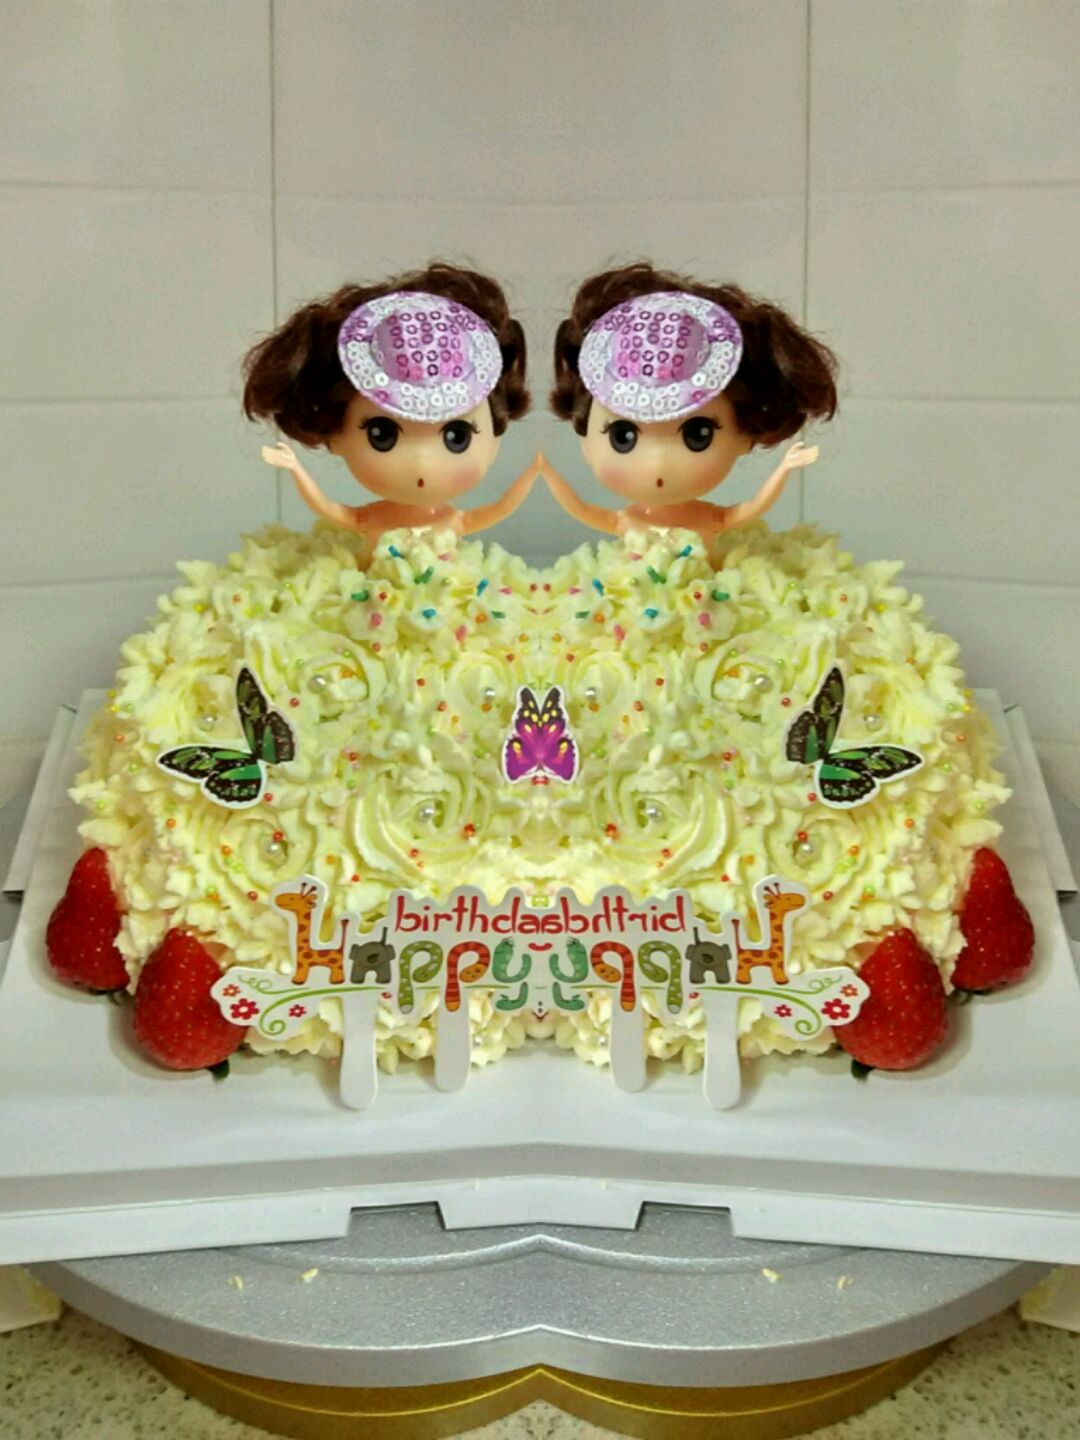 公主組合公仔蛋糕 | 客製化蛋糕 - Daisycafe